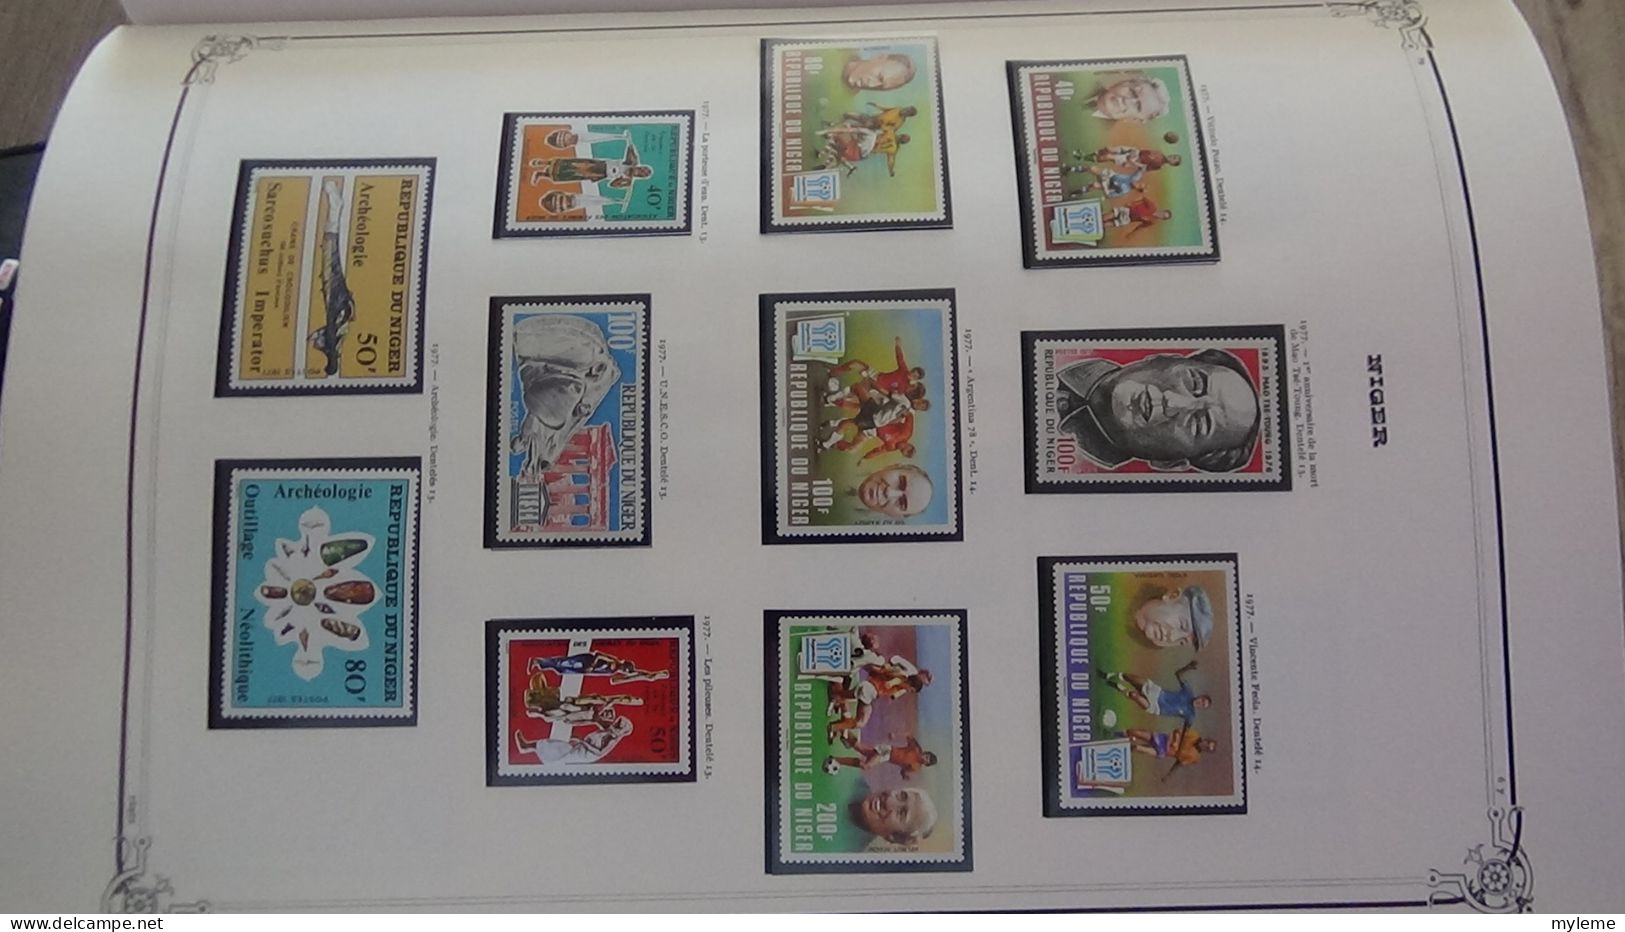 BC100 Collection de timbres et blocs ** du Niger sur feuille d'album.  A saisir !!!